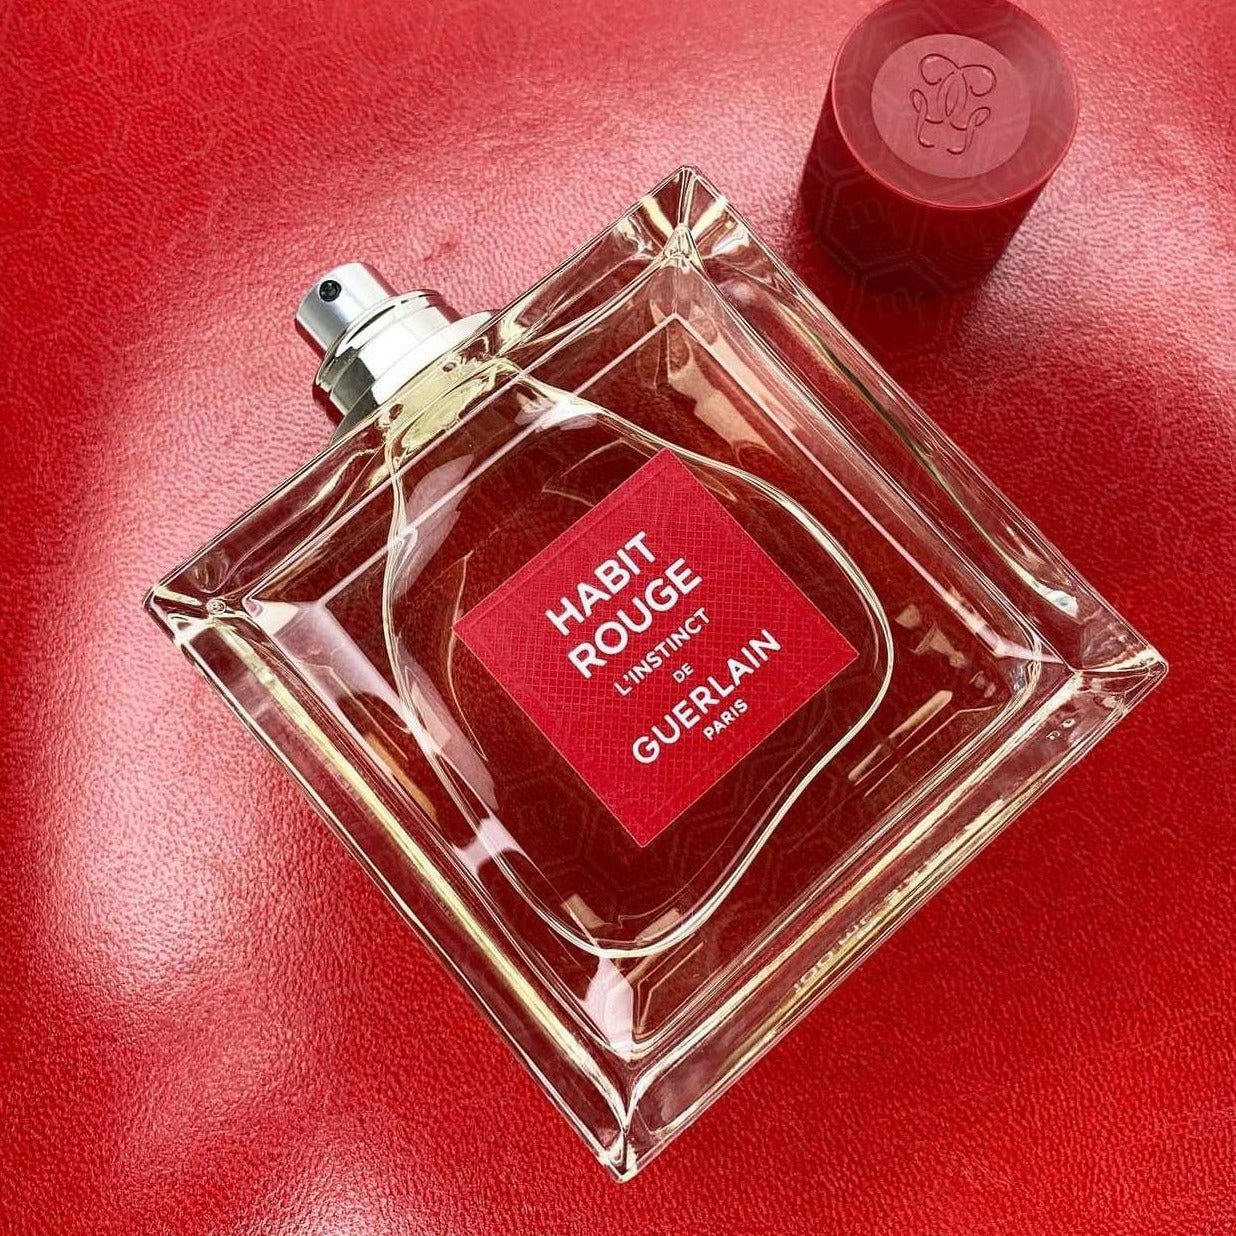 Guerlain Habit Rouge L'Instict EDT Intense | My Perfume Shop Australia